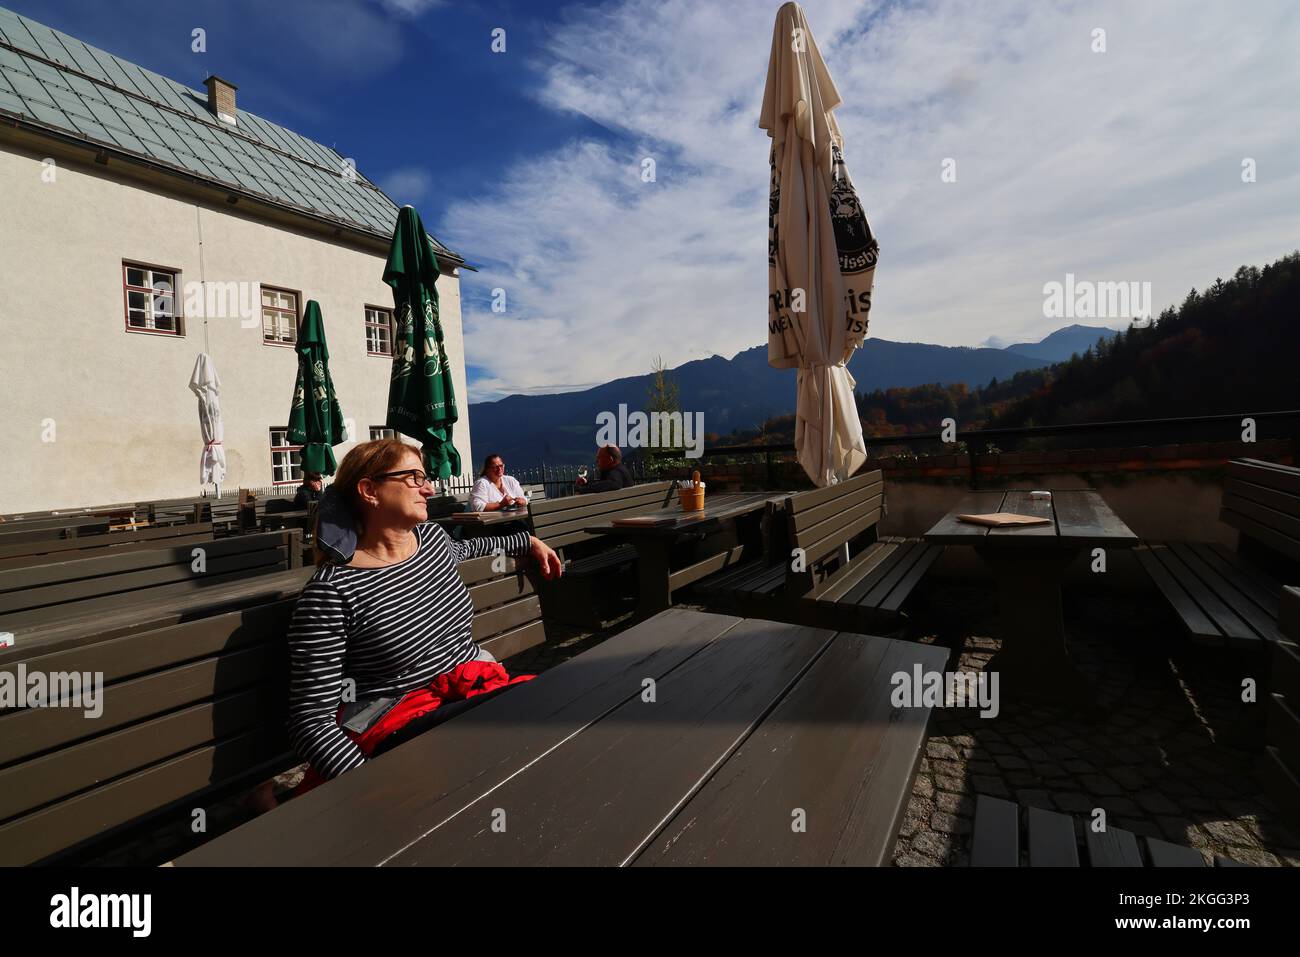 Biergarten, Erholung von einer harten Bergtour in einer romantischen Berghütte mit toller Aussicht bei einem Urlaub im Zillertal Stock Photo